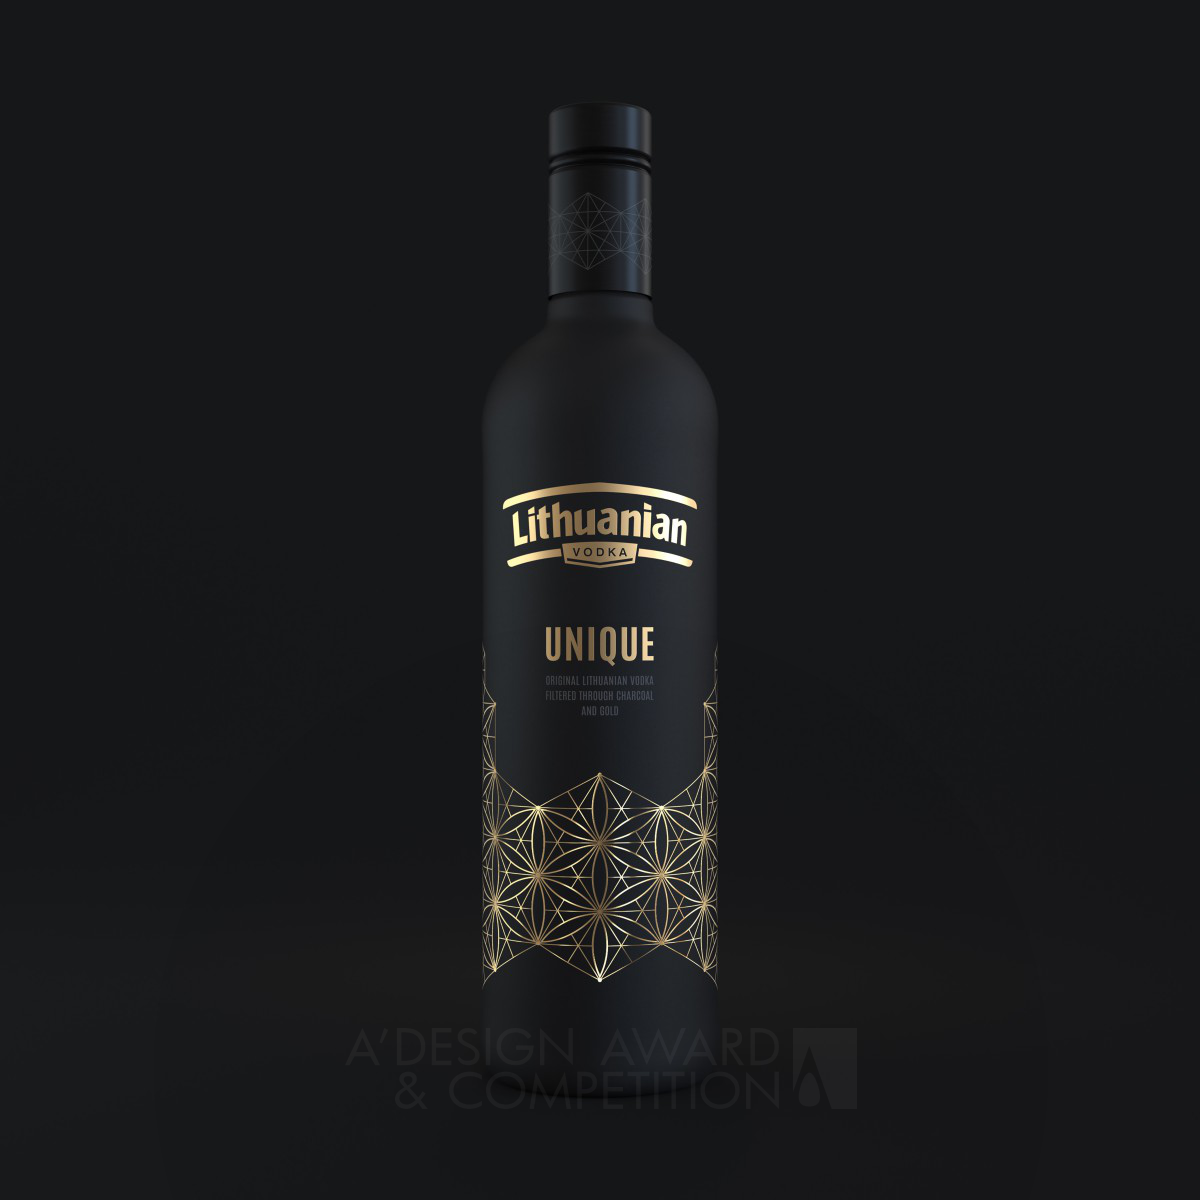 Lithuanian Vodka Unique <b>Packaging Design